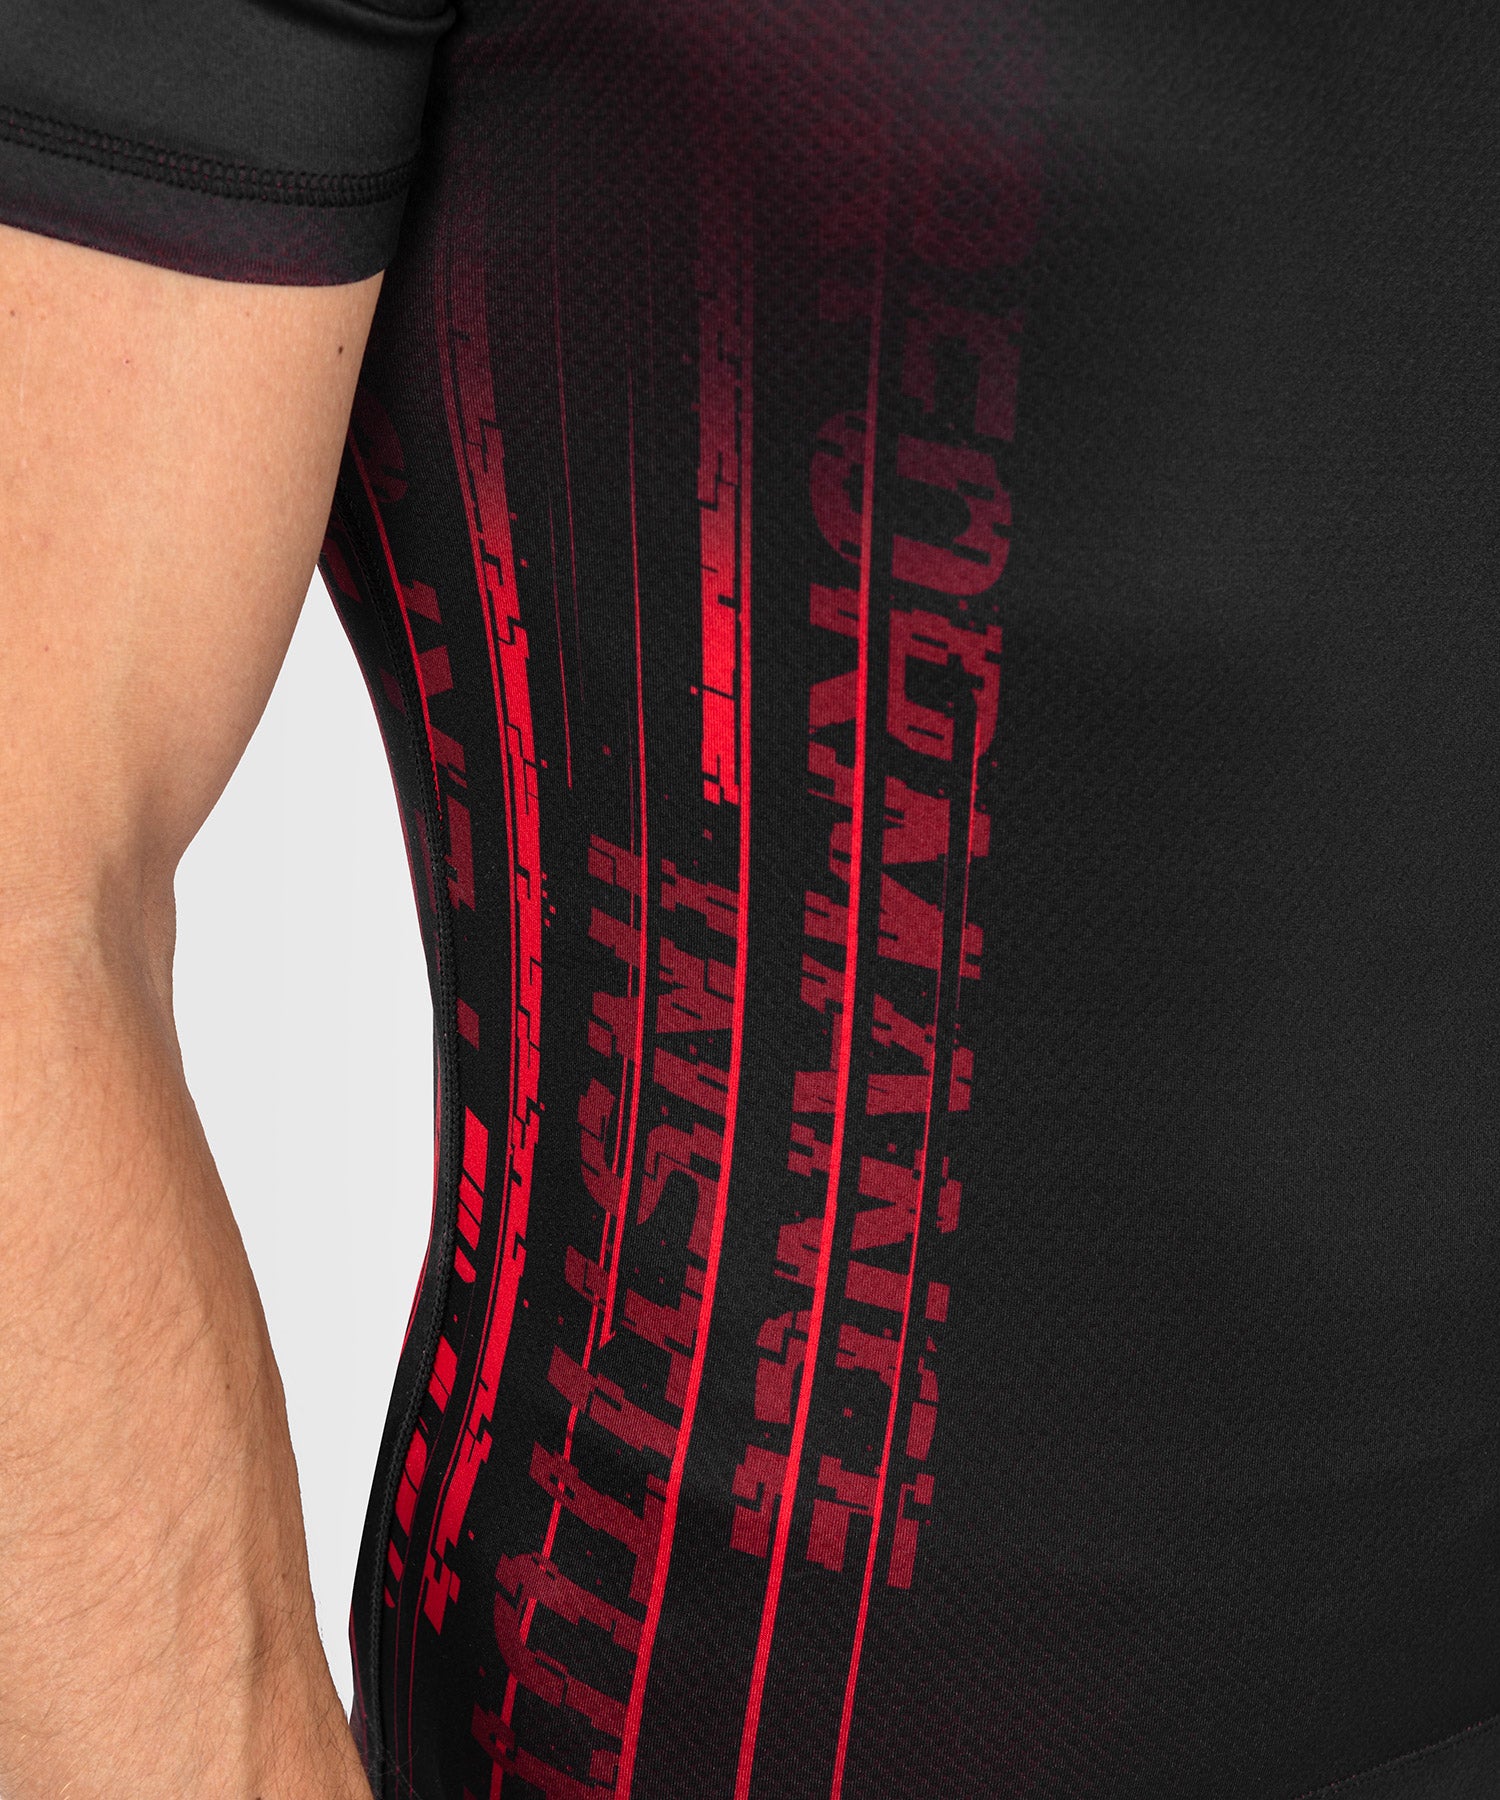 Pantalones cortos de alto rendimiento para hombre UFC X Venum Performance  Institute2.0 - negro / rojo > Envío Gratis